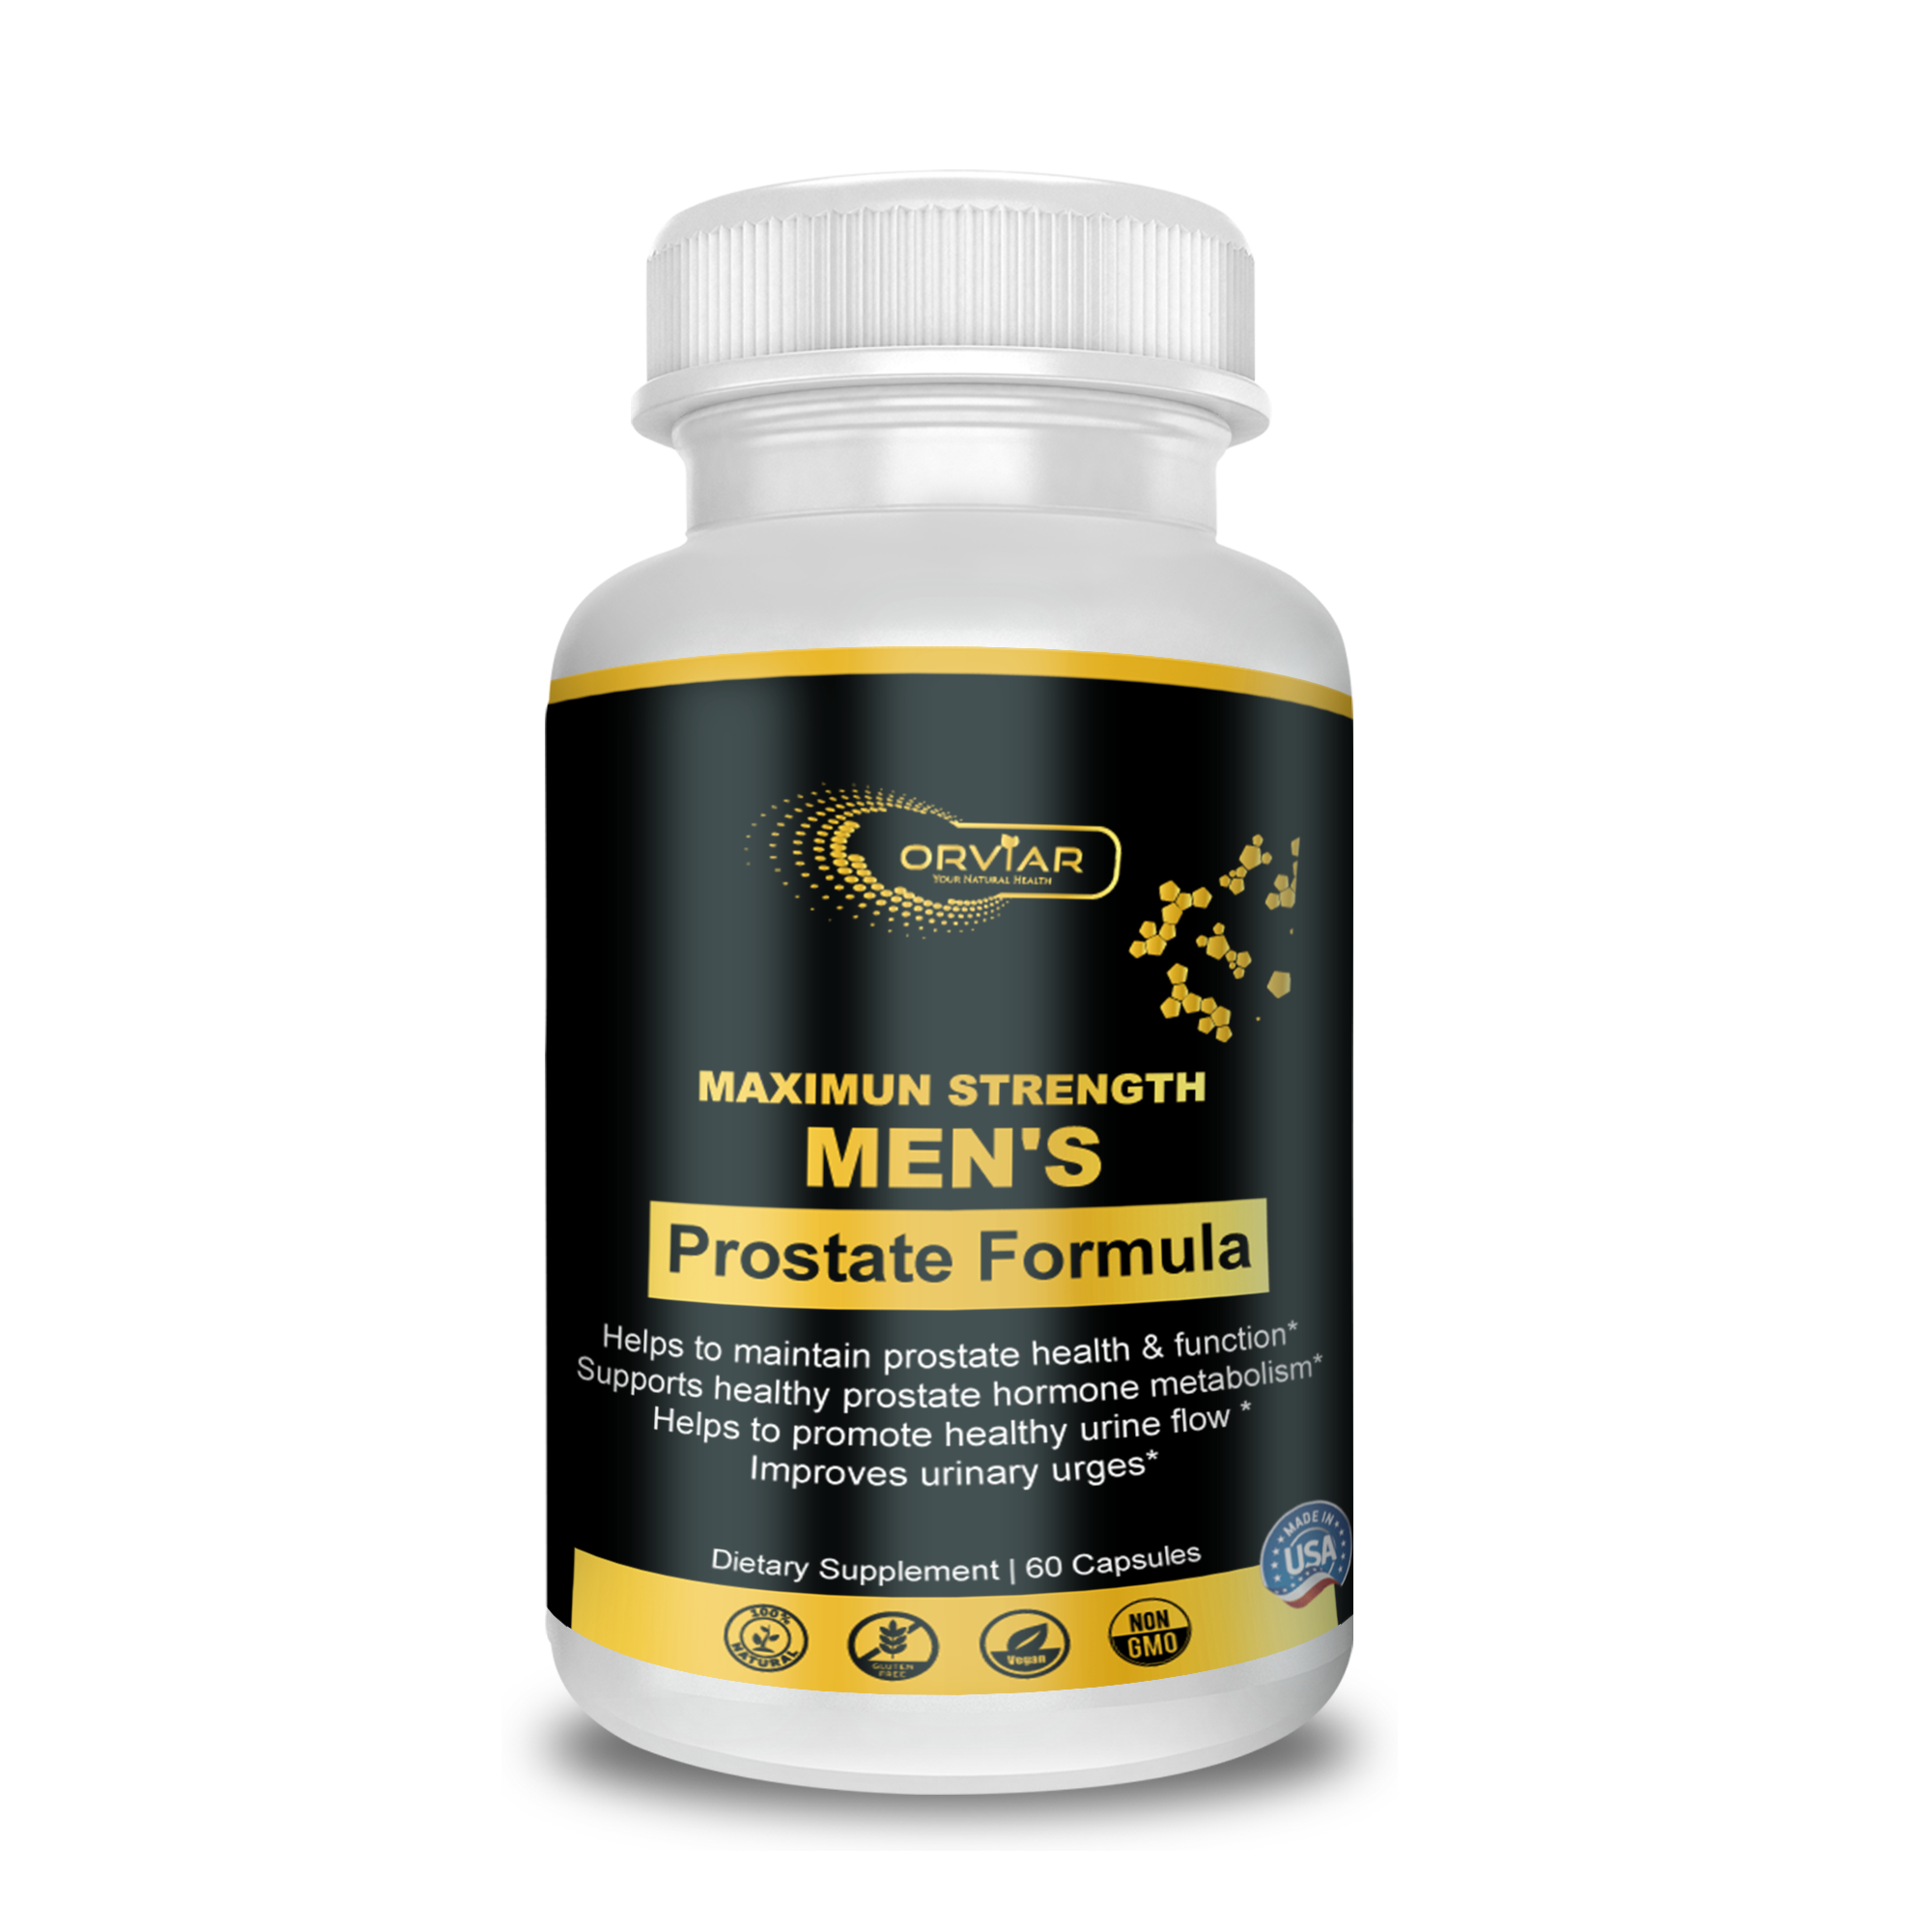 Formule prostate - Entretient et protège la santé de votre prostate